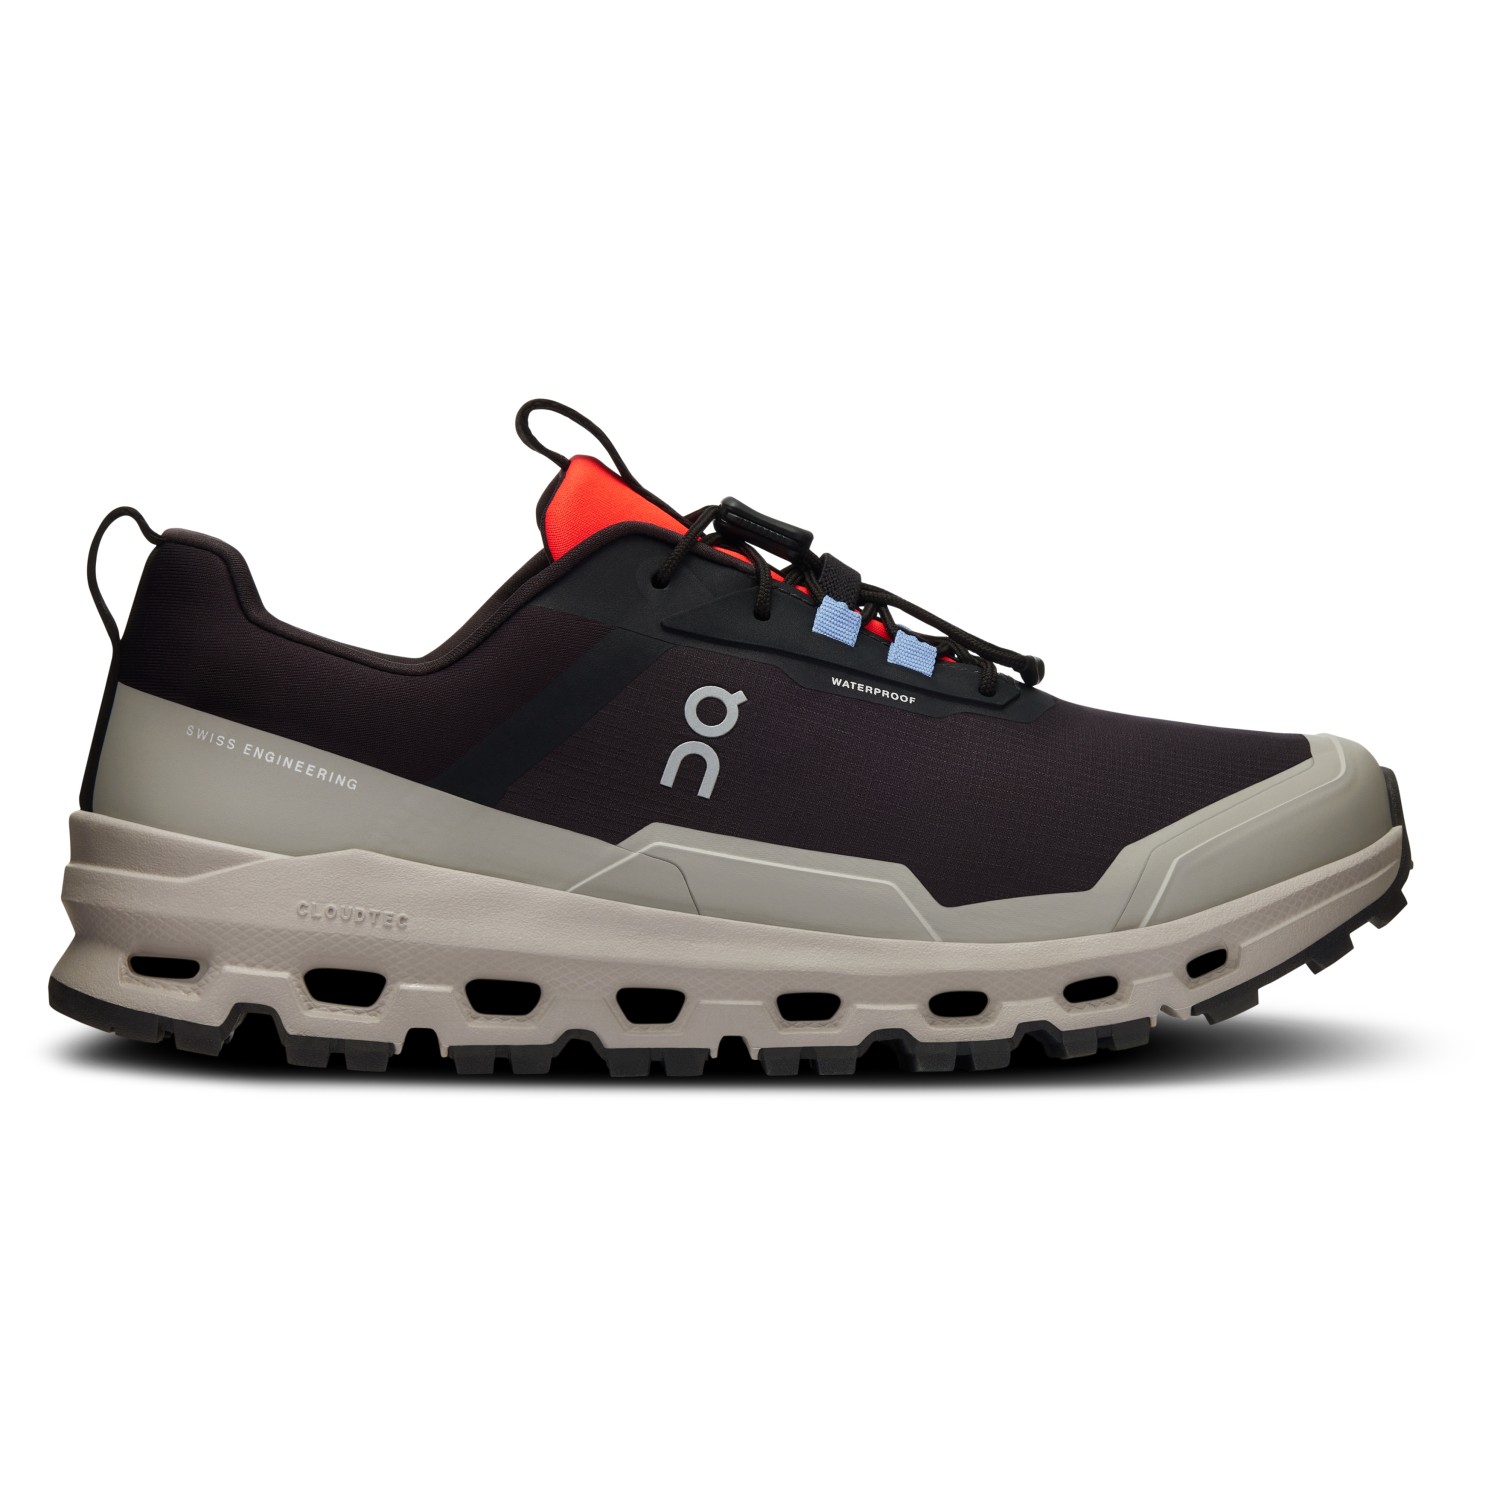 Мультиспортивная обувь On Youth Cloudhero Waterproof, цвет Magnet/Fog утеплители для ног игро beauty махровые 1 пар